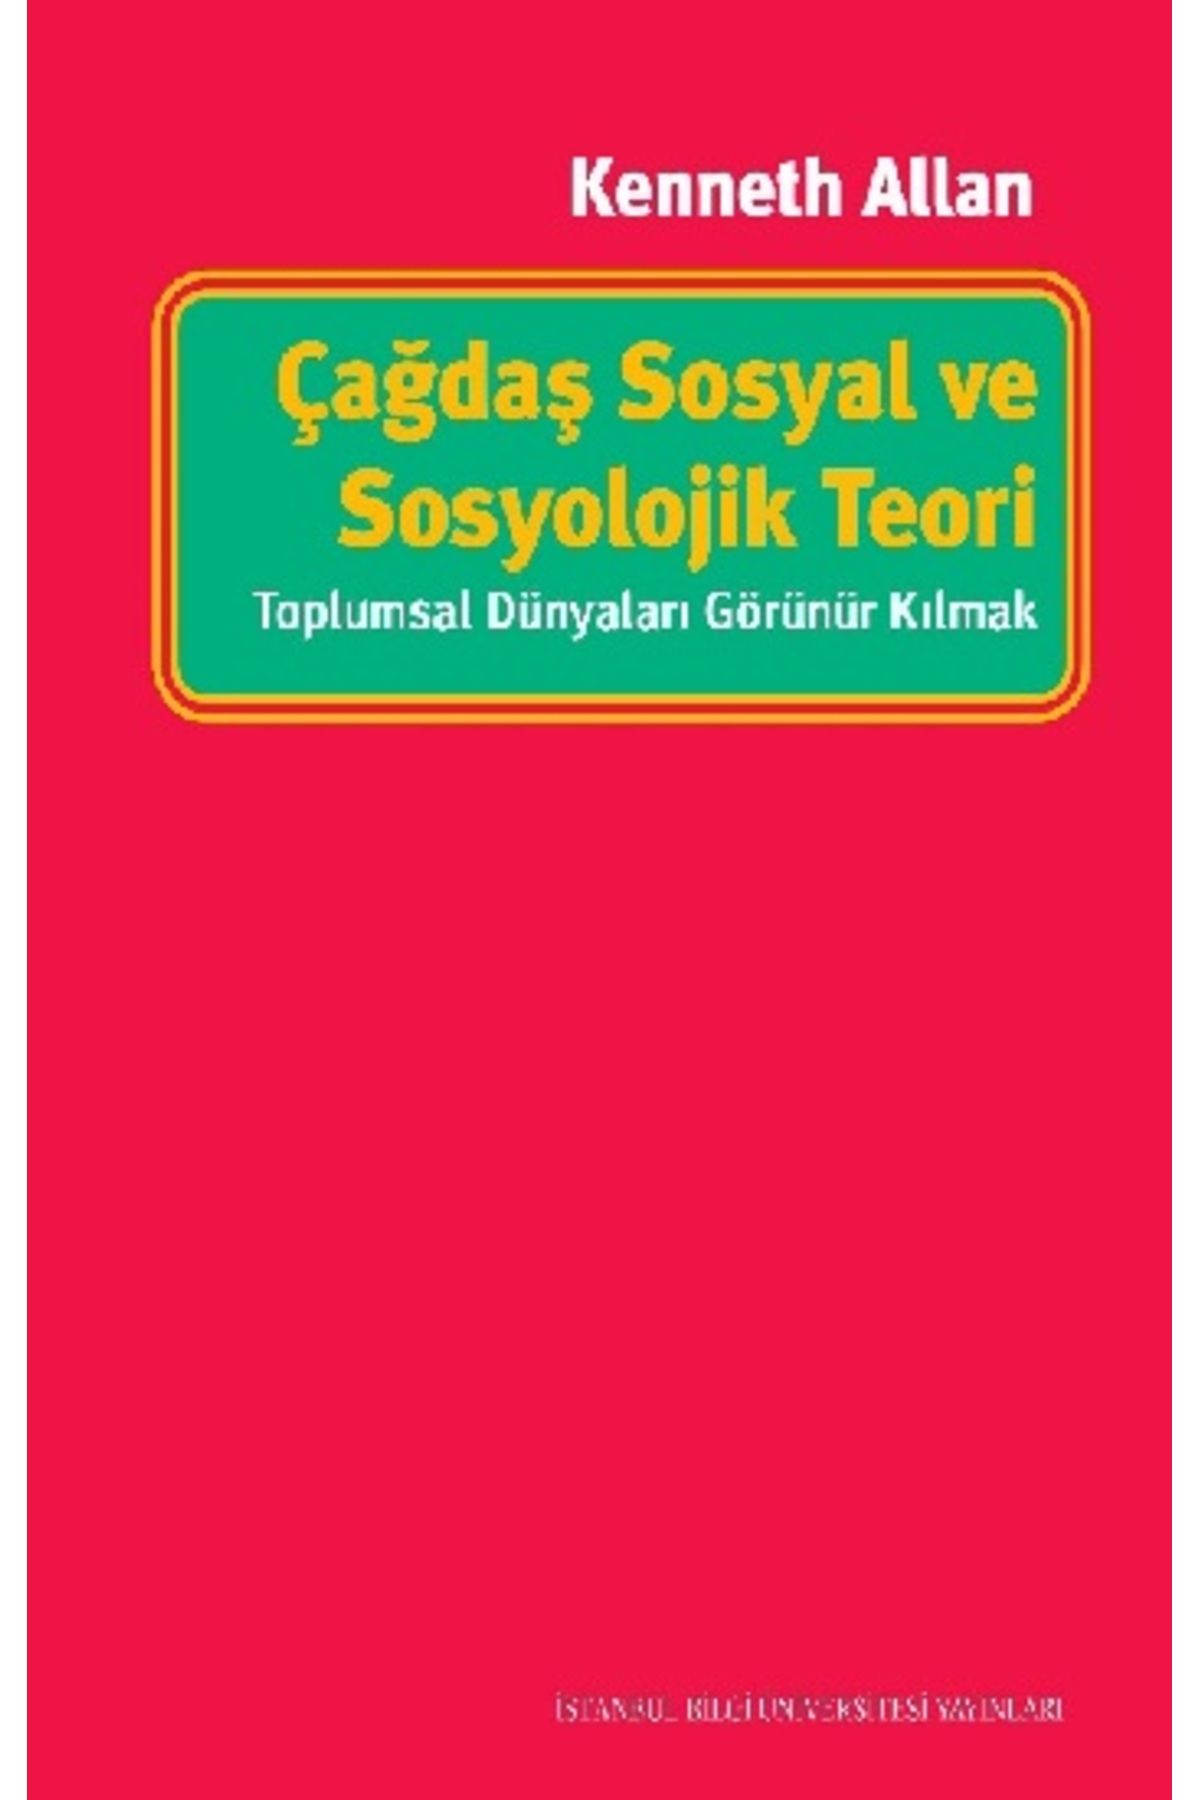 İstanbul Bilgi Üniversitesi Yayınları Çağdaş Sosyal ve Sosyolojik Teori - Toplumsal Dünyaları Görünür Kılmak